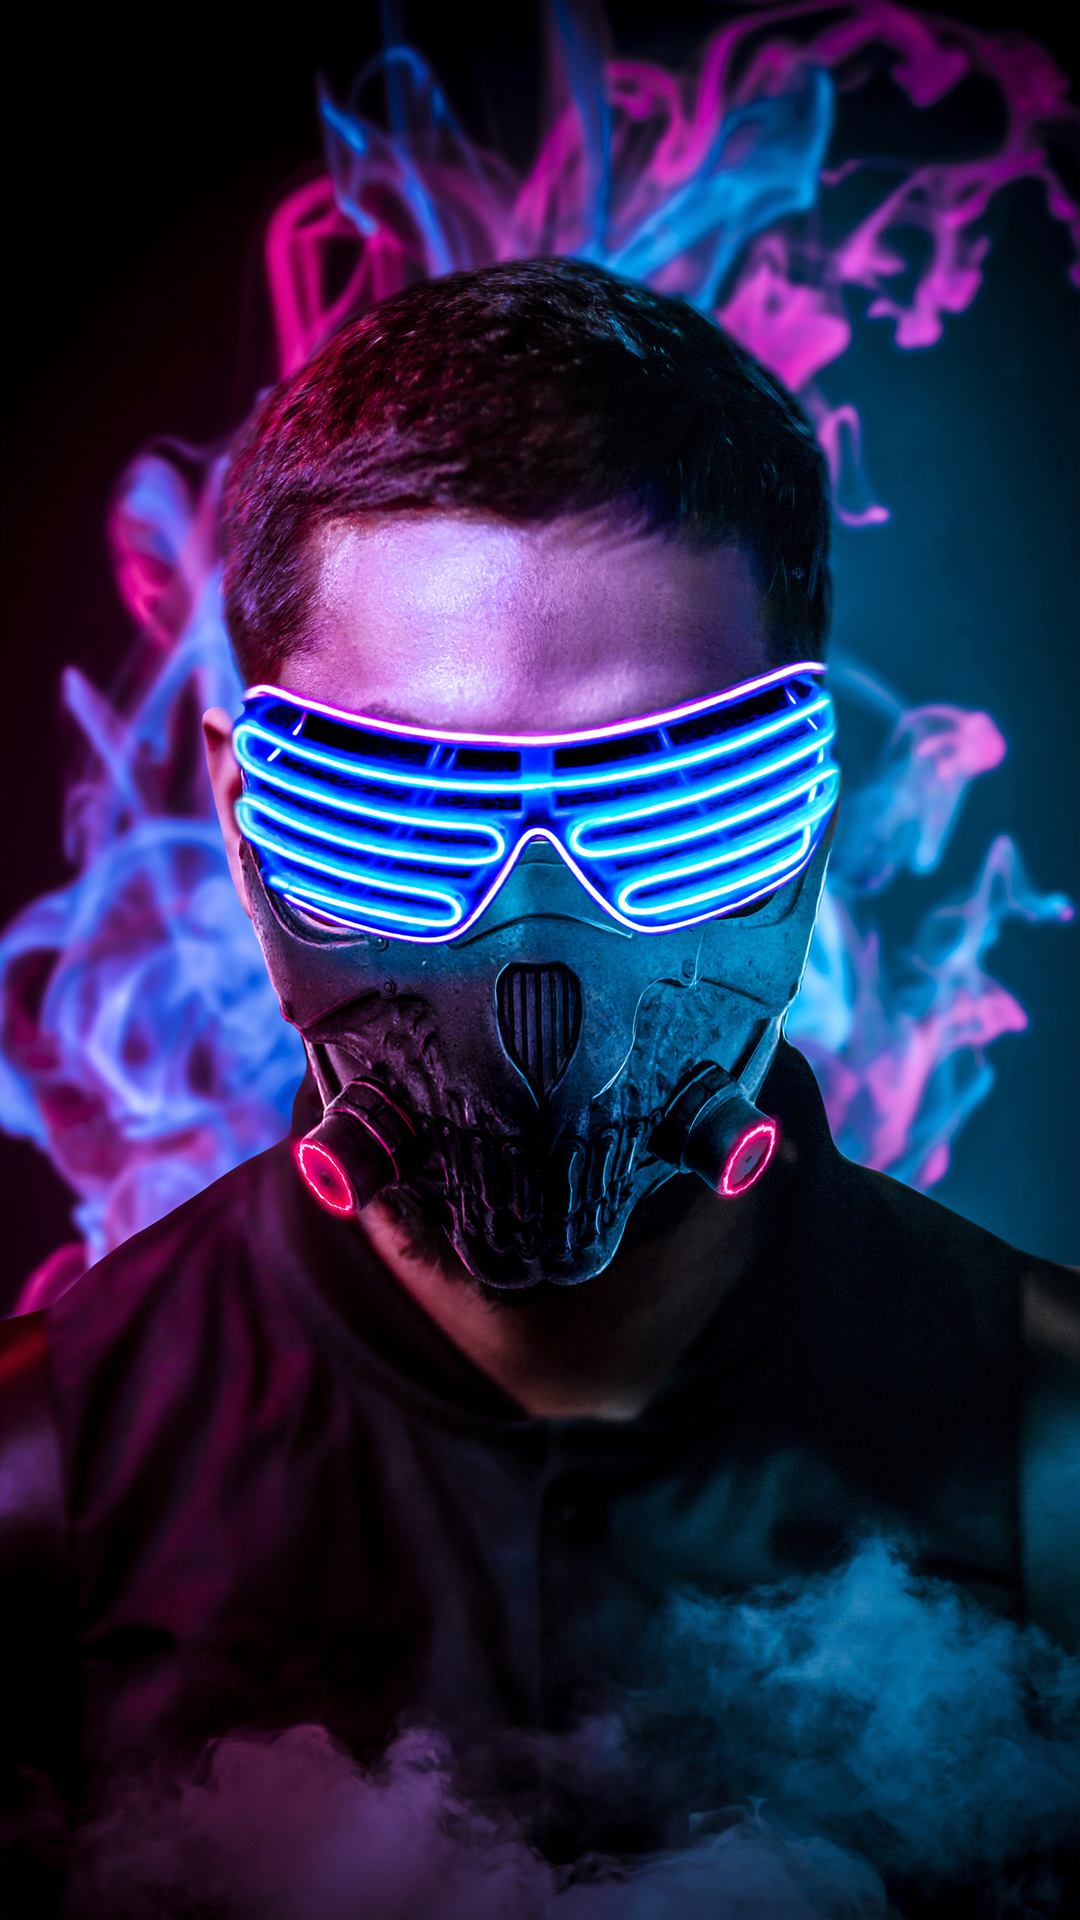 Fondos de pantalla "Neon Mask"